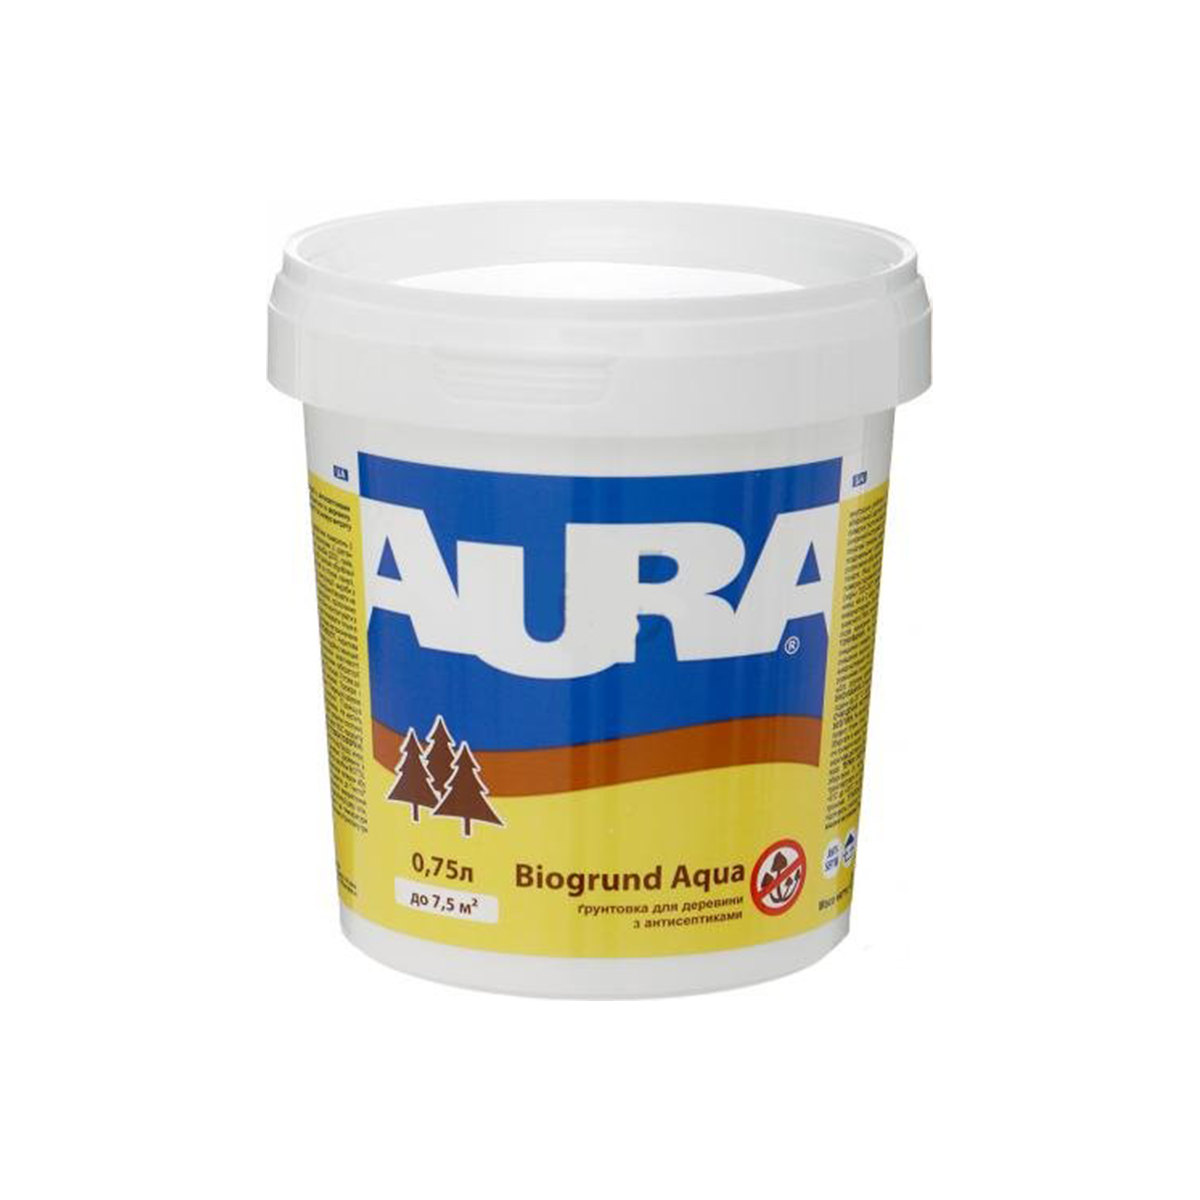 Грунтовка для дерева Aura Biogrund Aqua 0.75л